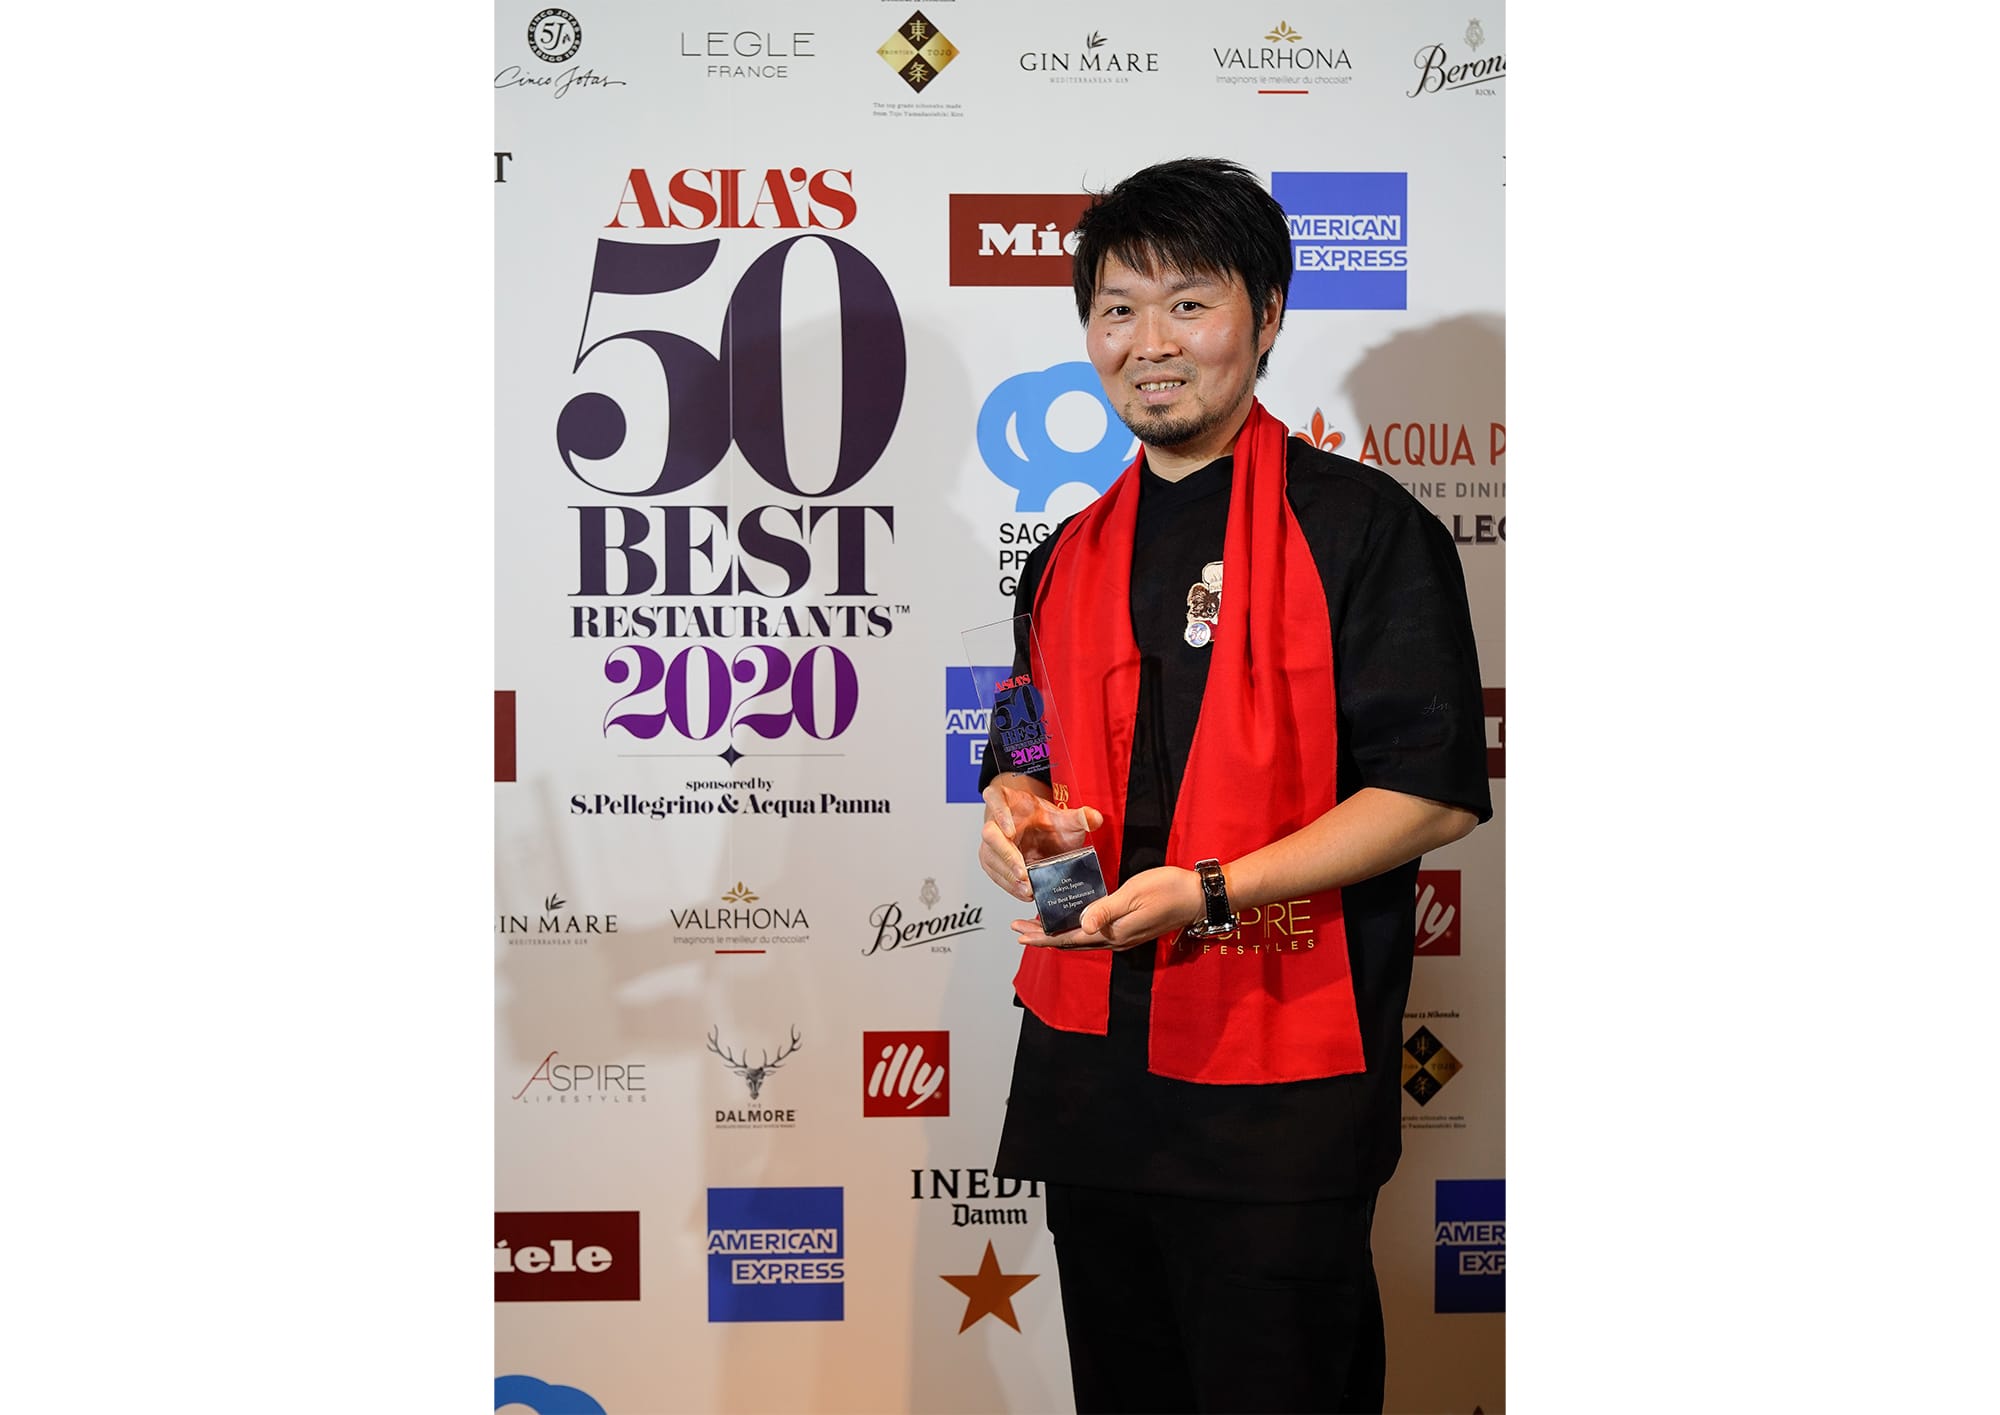 连续三年获得“日本最佳餐厅”称号的“传Den”主厨长谷川在佑，在讲台上表达得奖的喜悦前先说他的愿望是全世界的厨师现在正面对的情况能尽快好转。